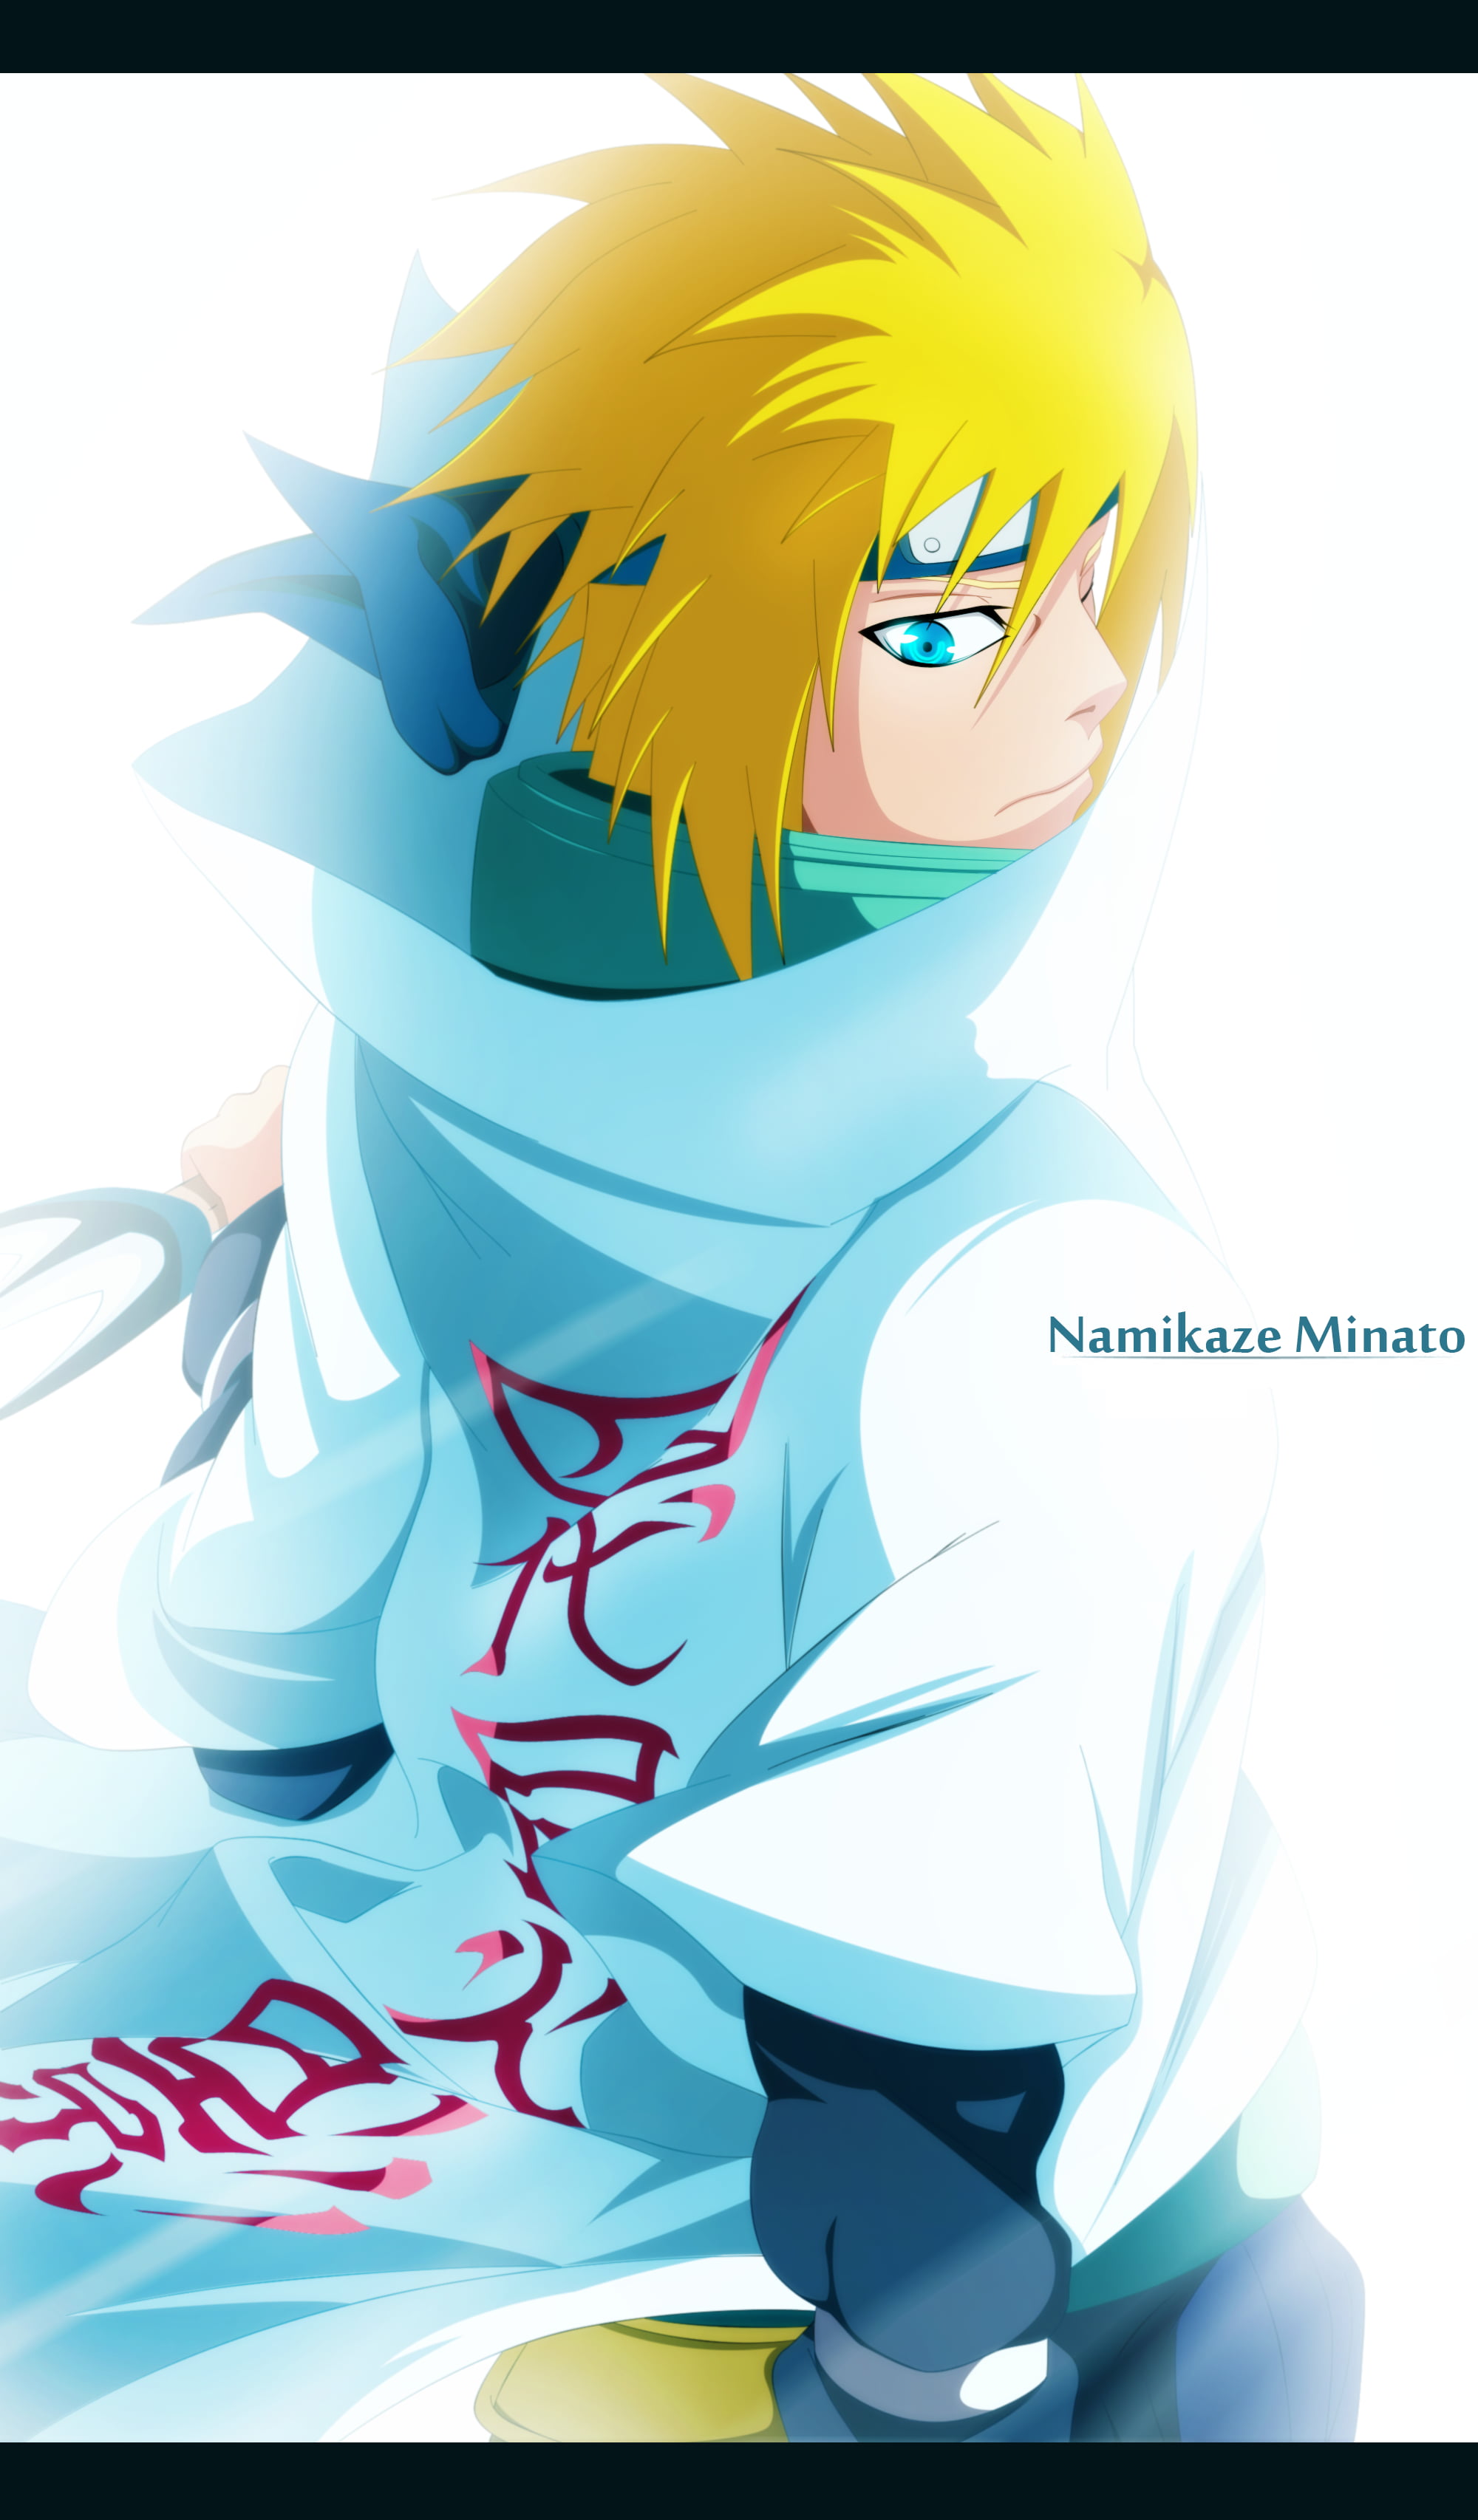 Naruto Shippuden  Minato NamikazeYellow Flash of Leaf 2K wallpaper  download